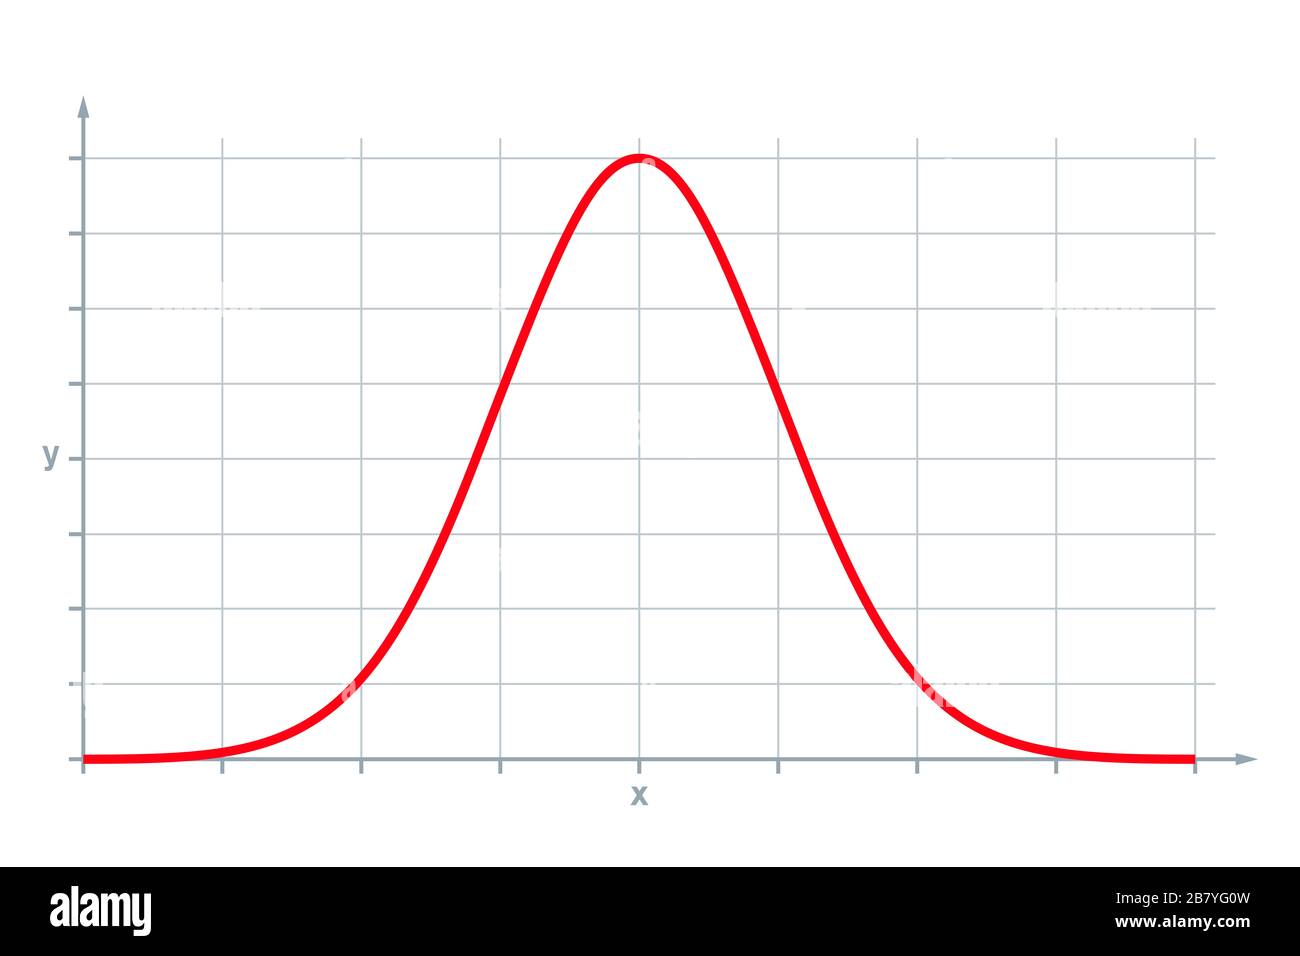 Distribuzione normale standard, anche distribuzione gaussiana o curva a campana. Utilizzato nelle statistiche e nelle scienze naturali e sociali. Foto Stock